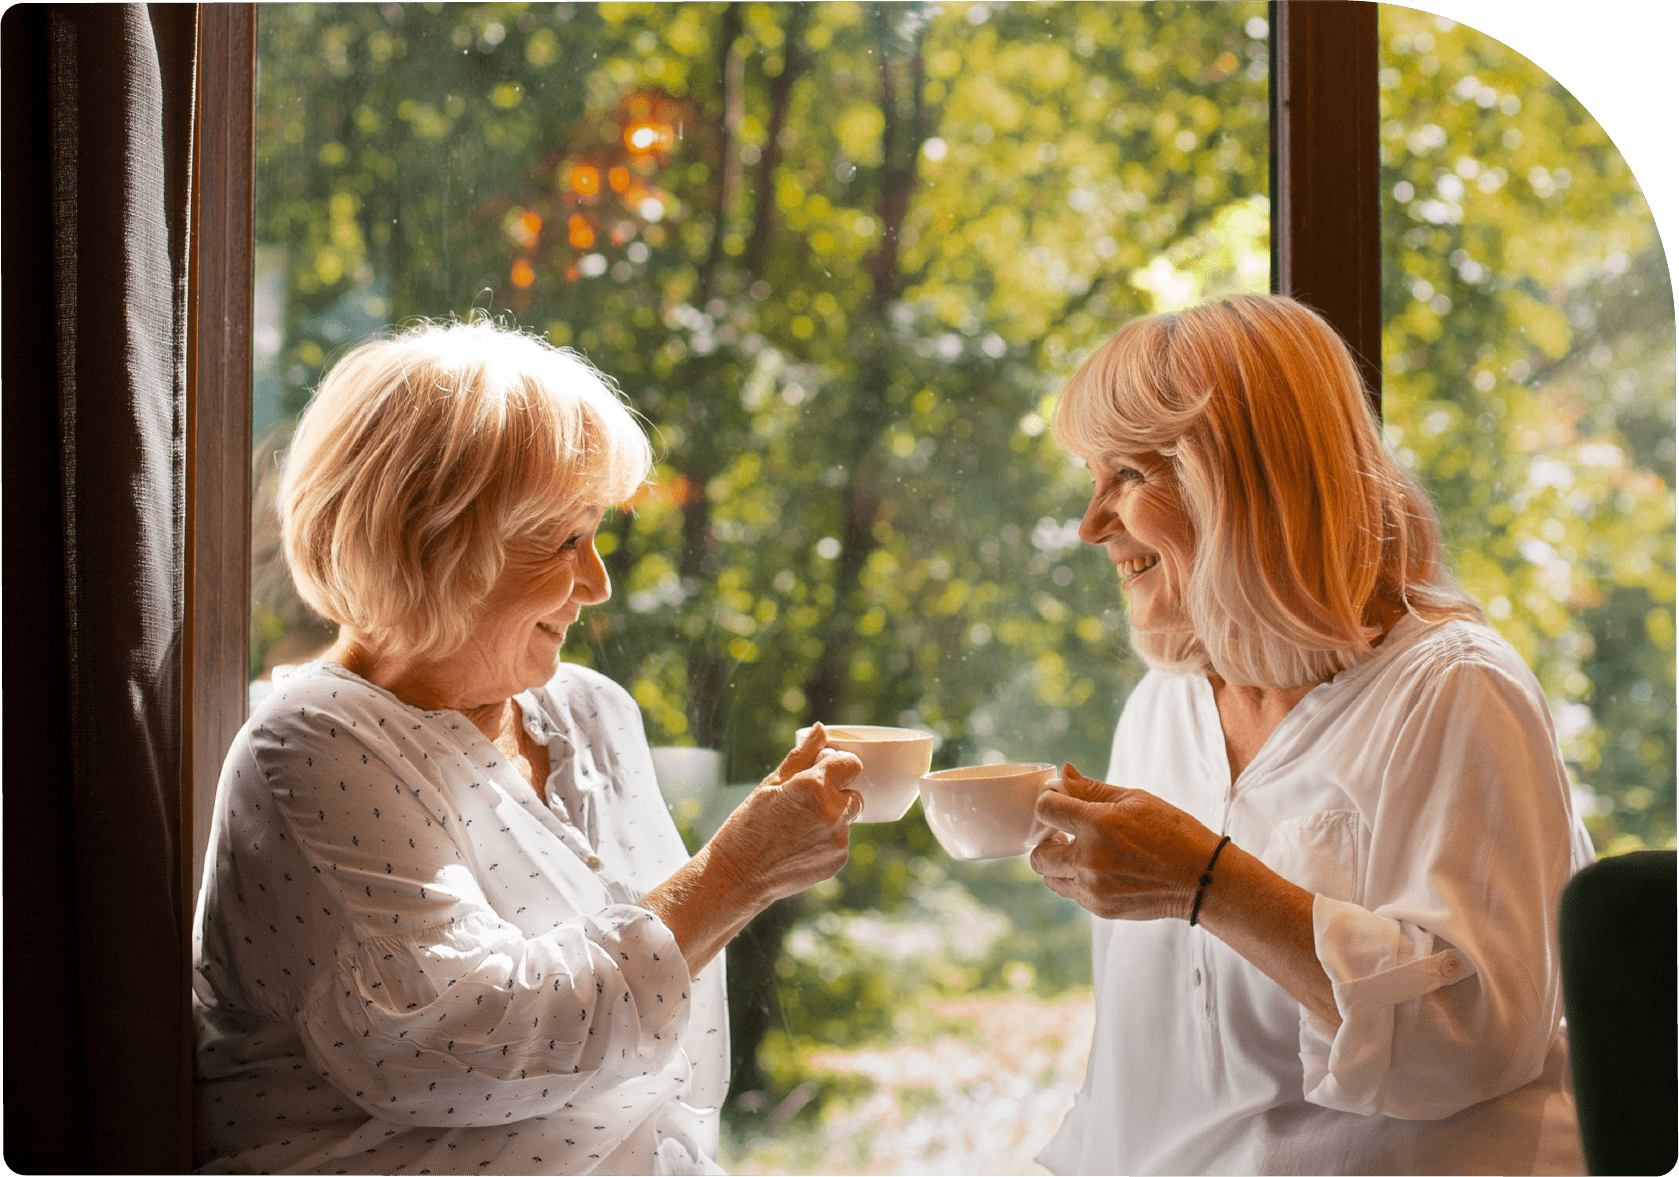 Media4Care bietet Inhalte für die tages- und jahreszeitliche Orientierung in Seniorenbetreuung